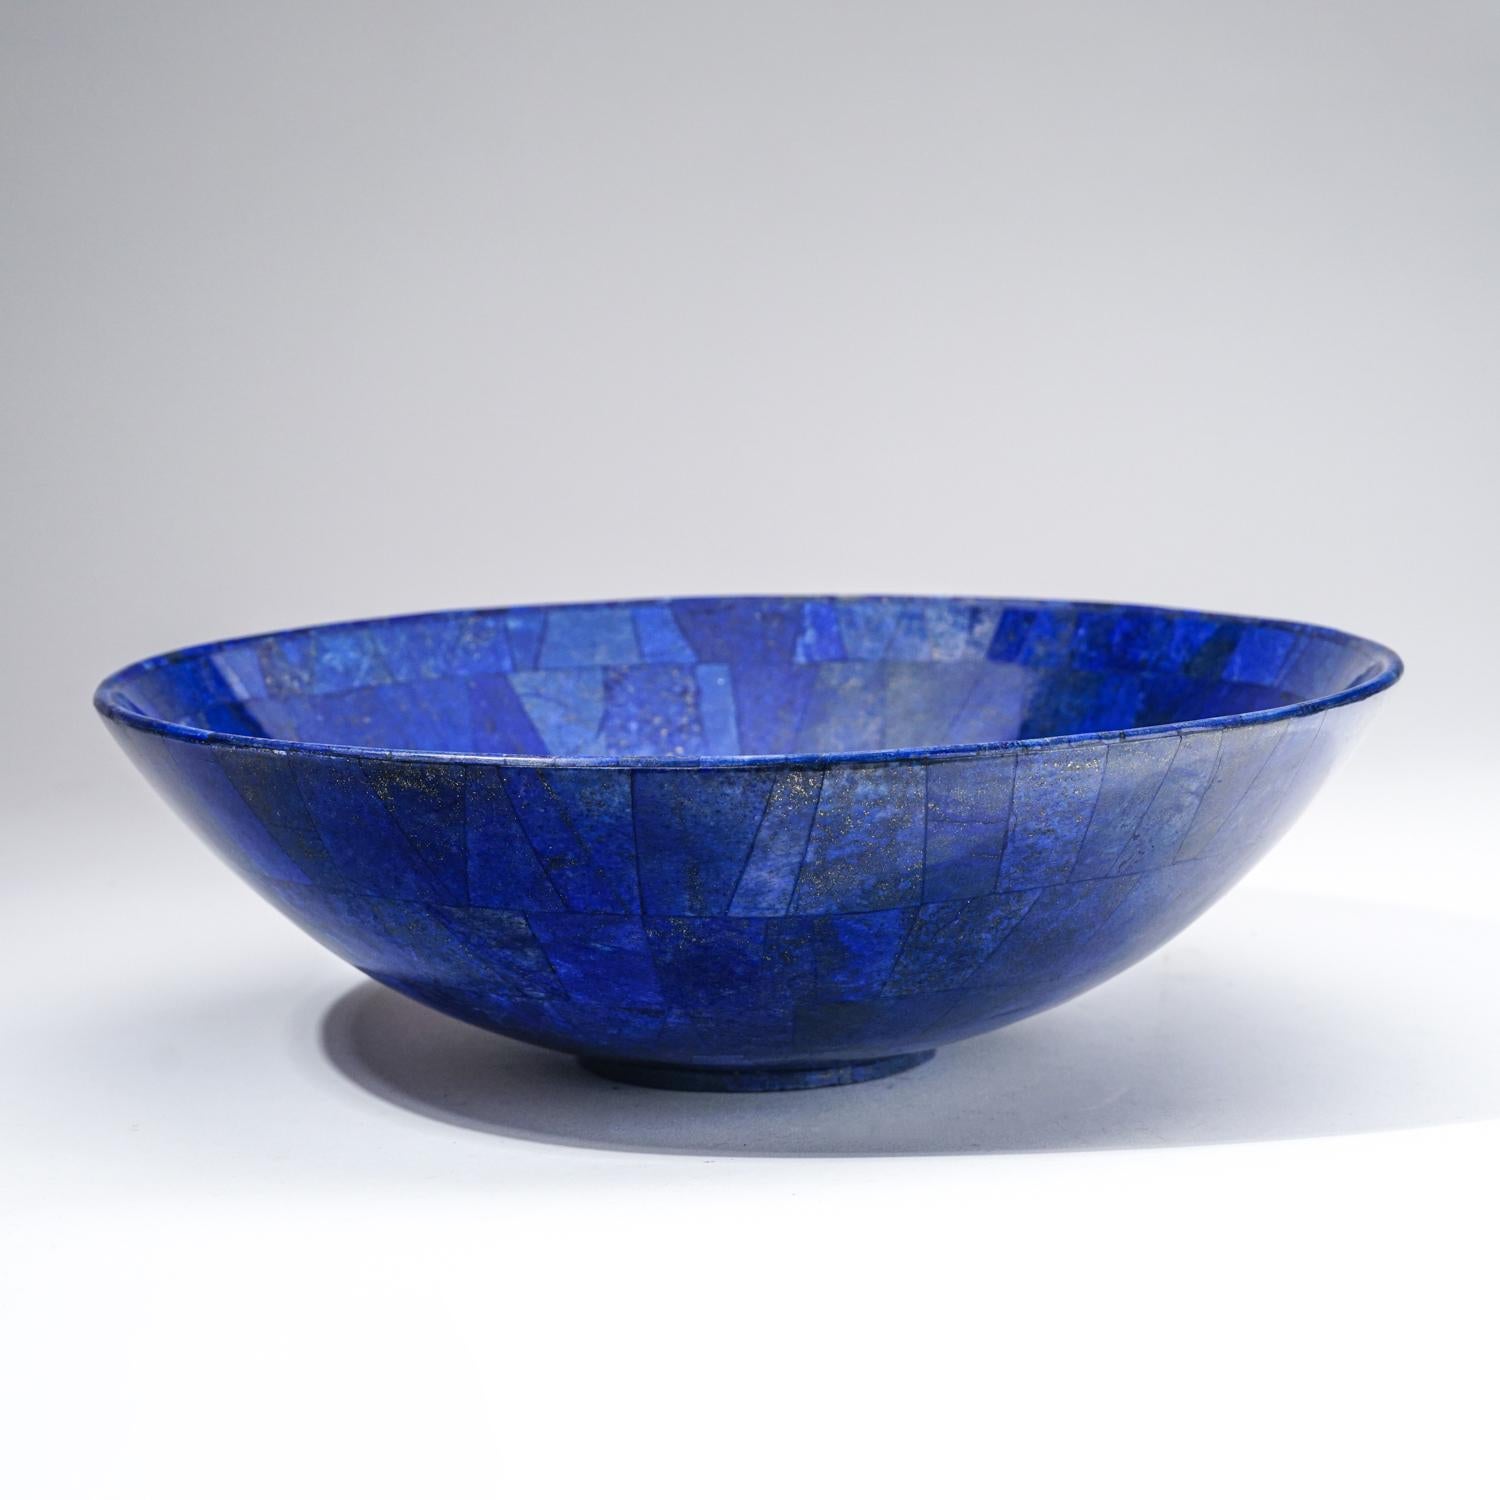 Bol en lapis-lazuli naturel de qualité AAA, poli à la main, provenant d'Afghanistan.  Ce spécimen présente une riche couleur bleu royal électrique enrichie de microcristaux de pyrite scintillants. Cette coupe en lapis de qualité supérieure est un